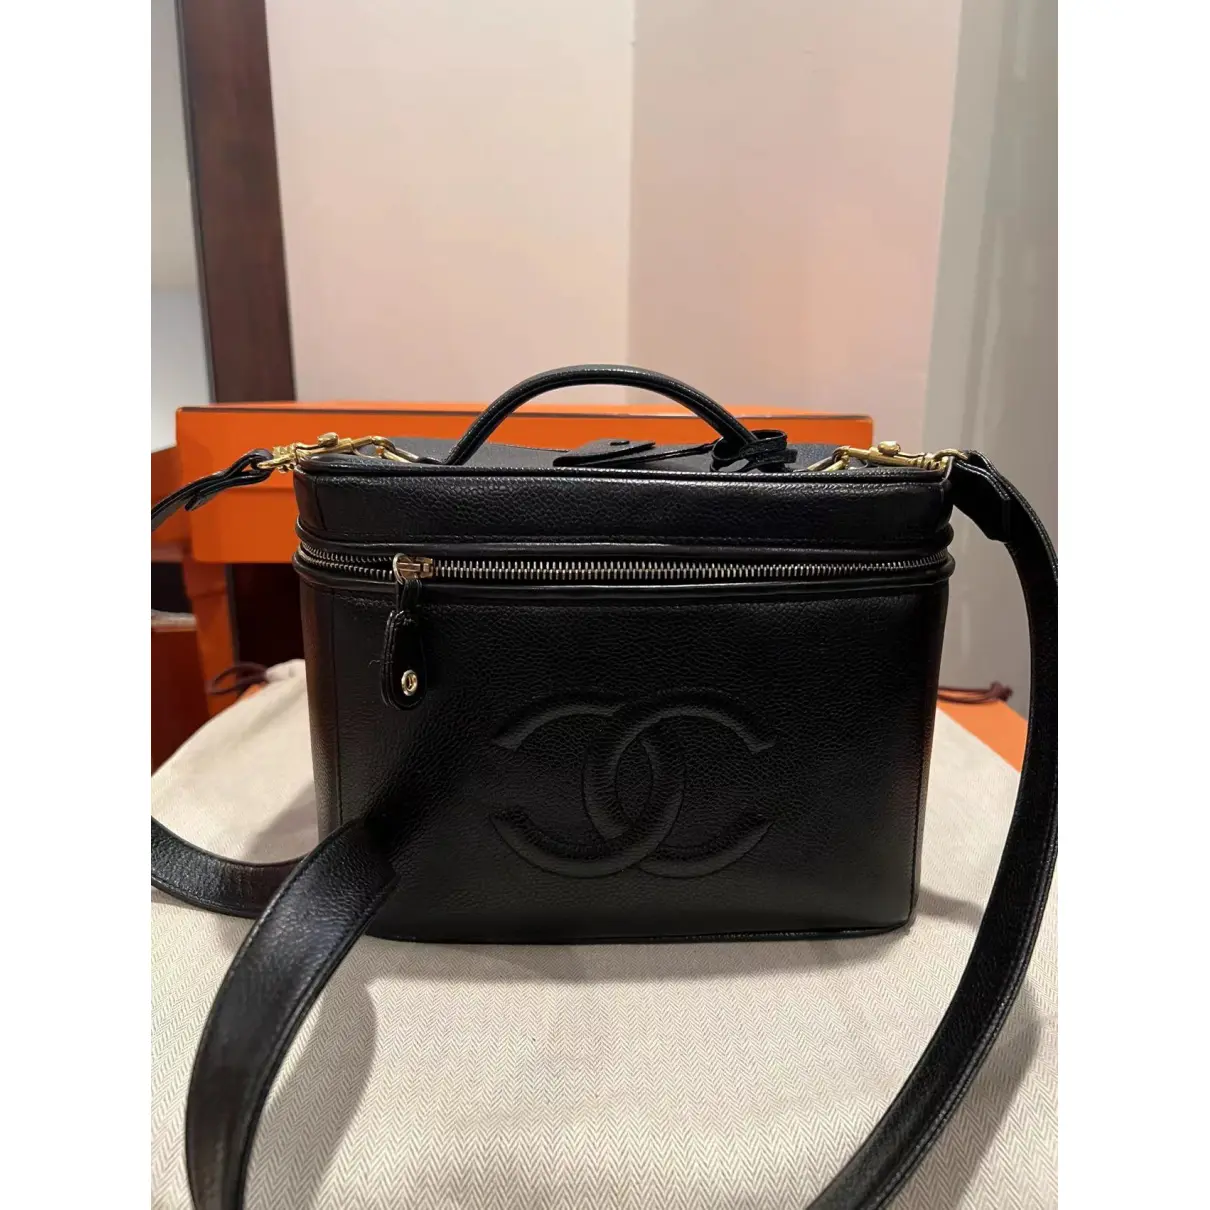 Buy Chanel Leather travel bag online - Vintage